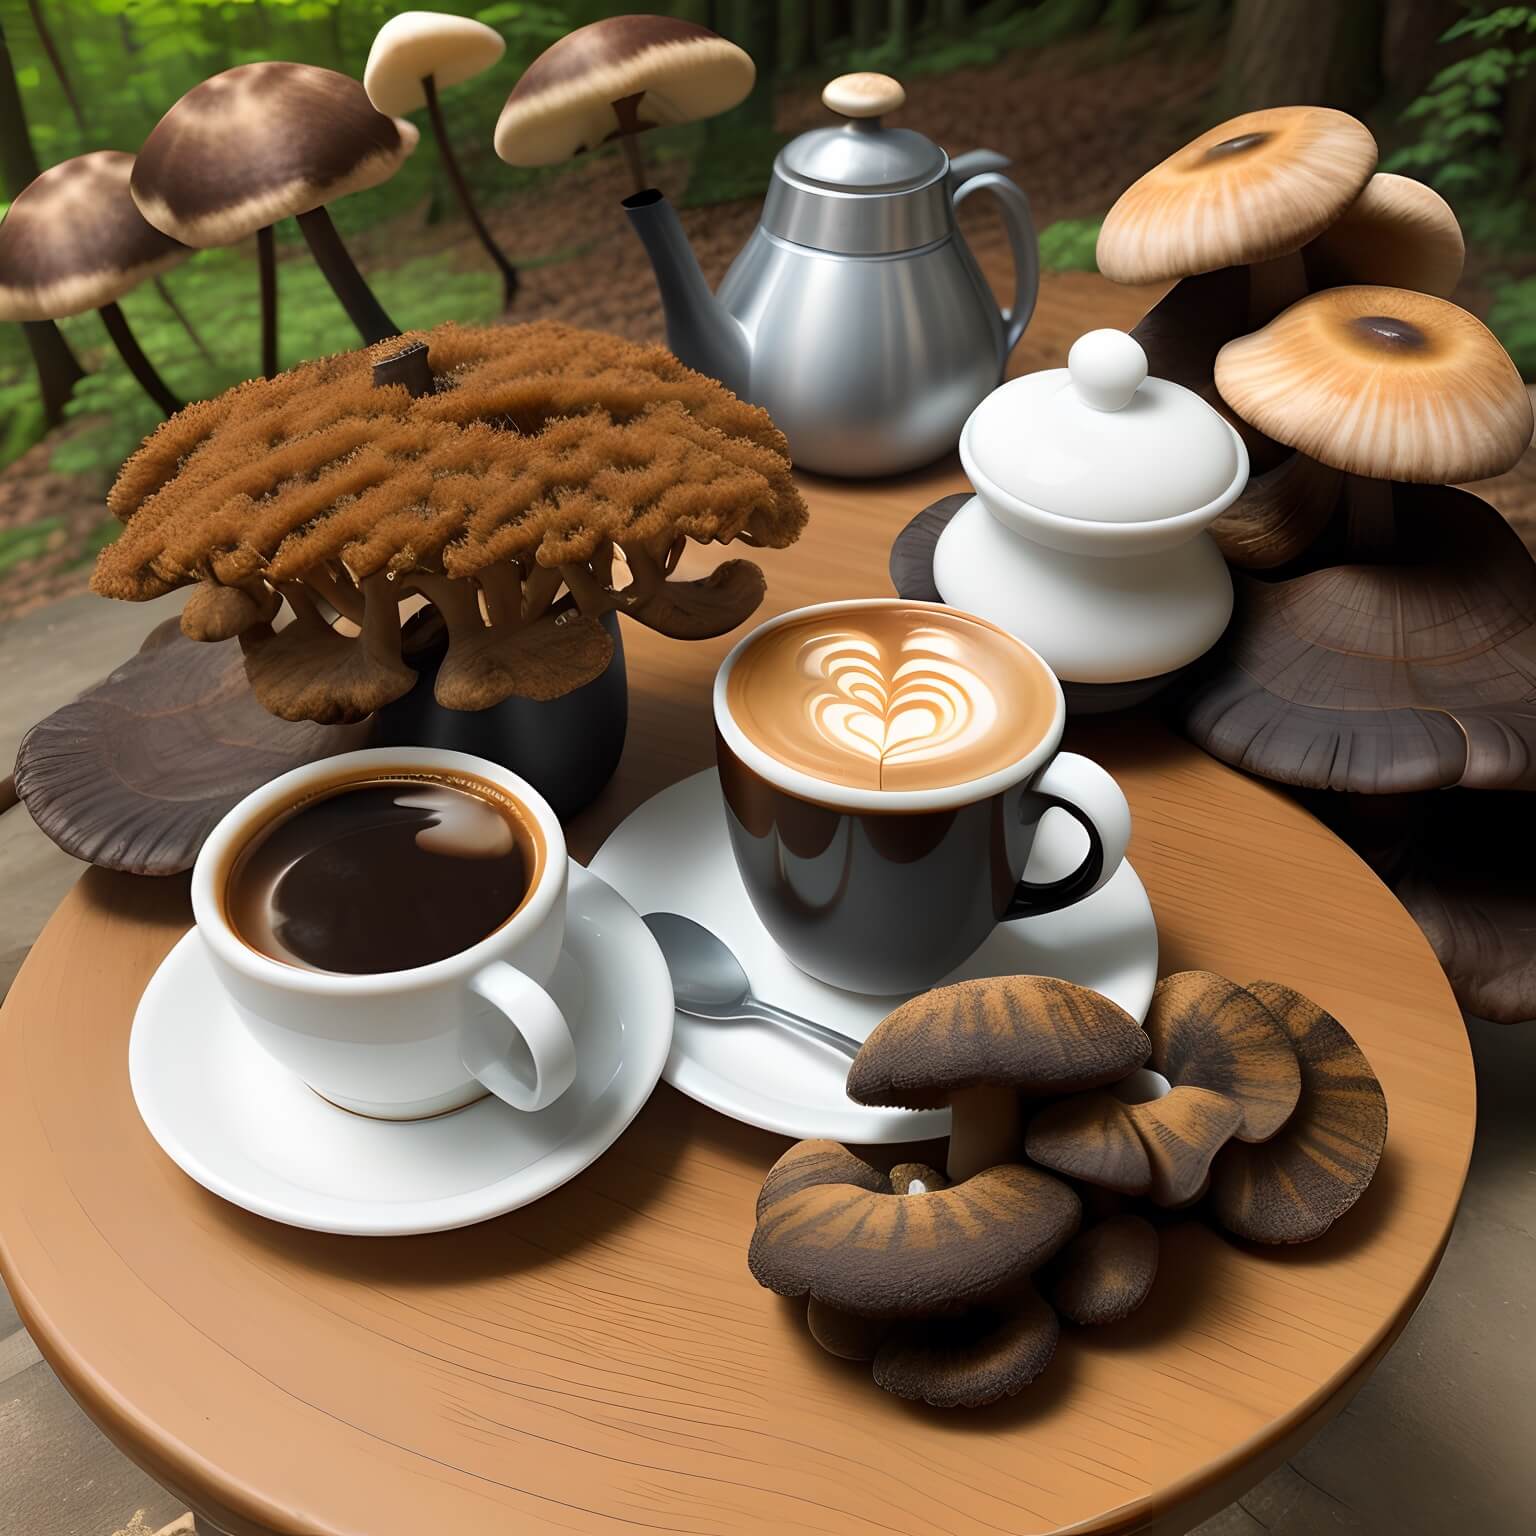 best mushroom coffee